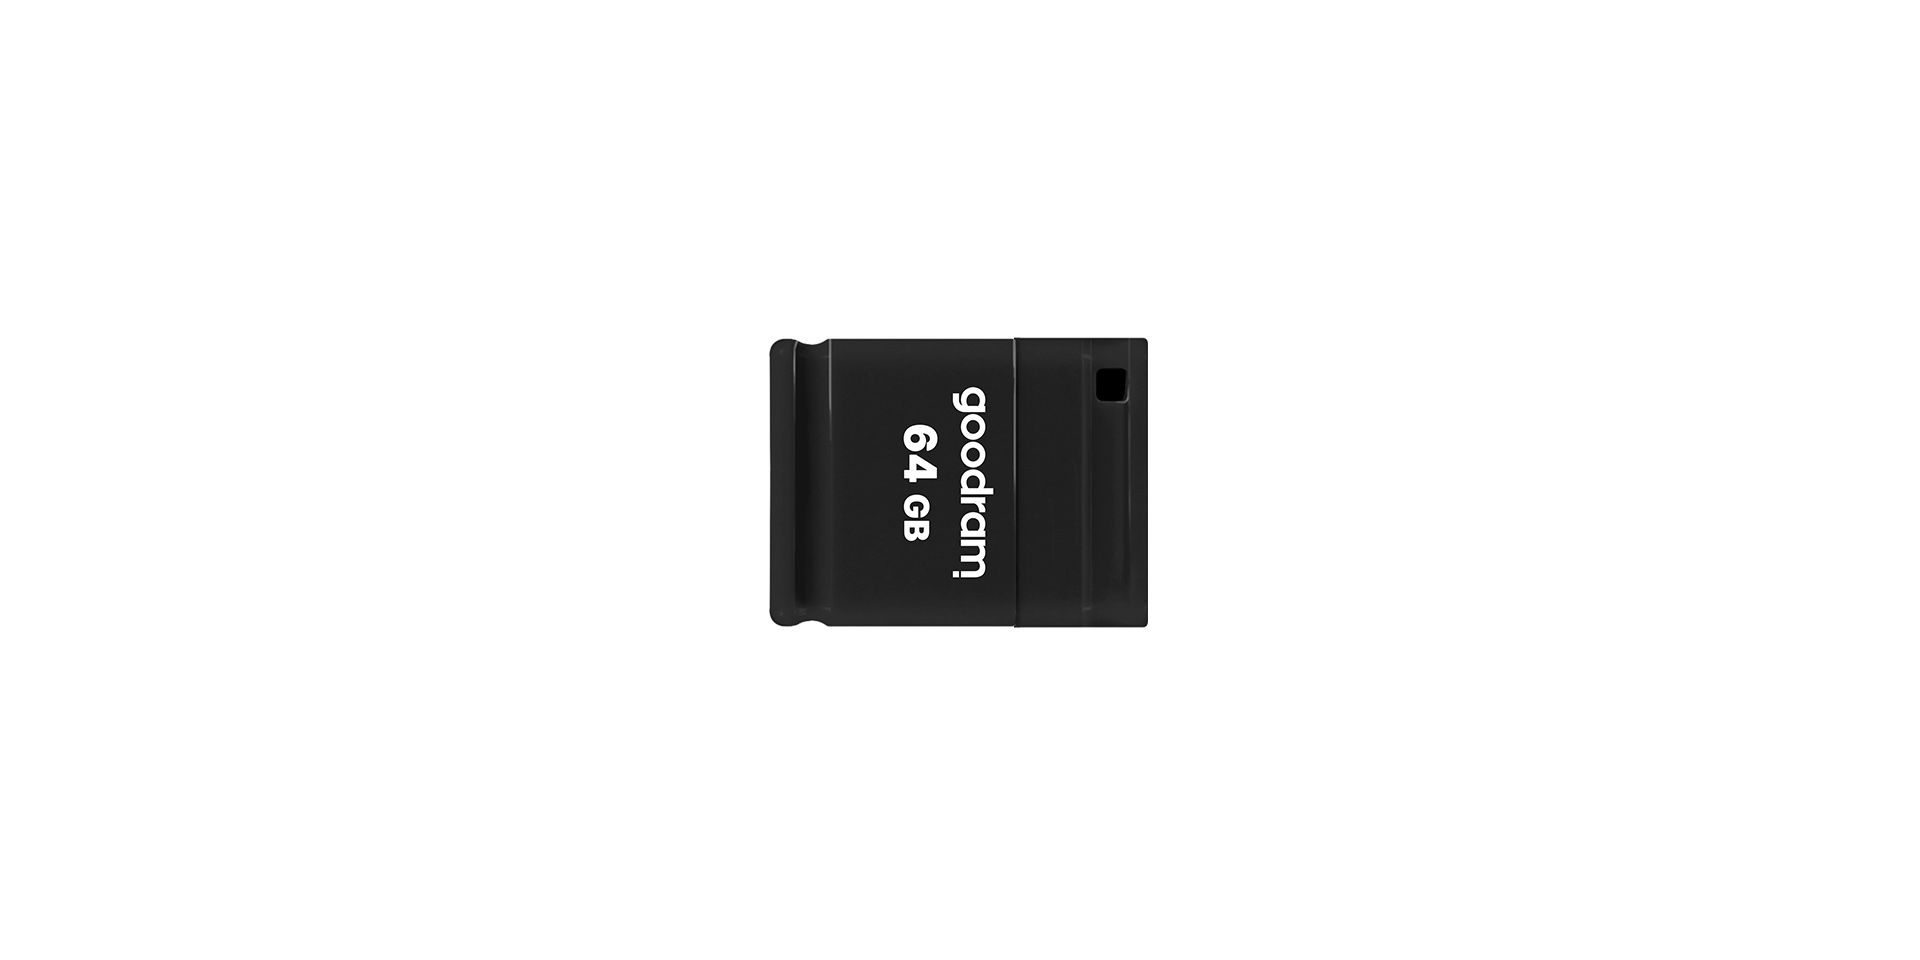 GOODRAM UPI2-0080K0R11 GOODRAM memory USB UPI2 8GB USB 2.0 Black_3